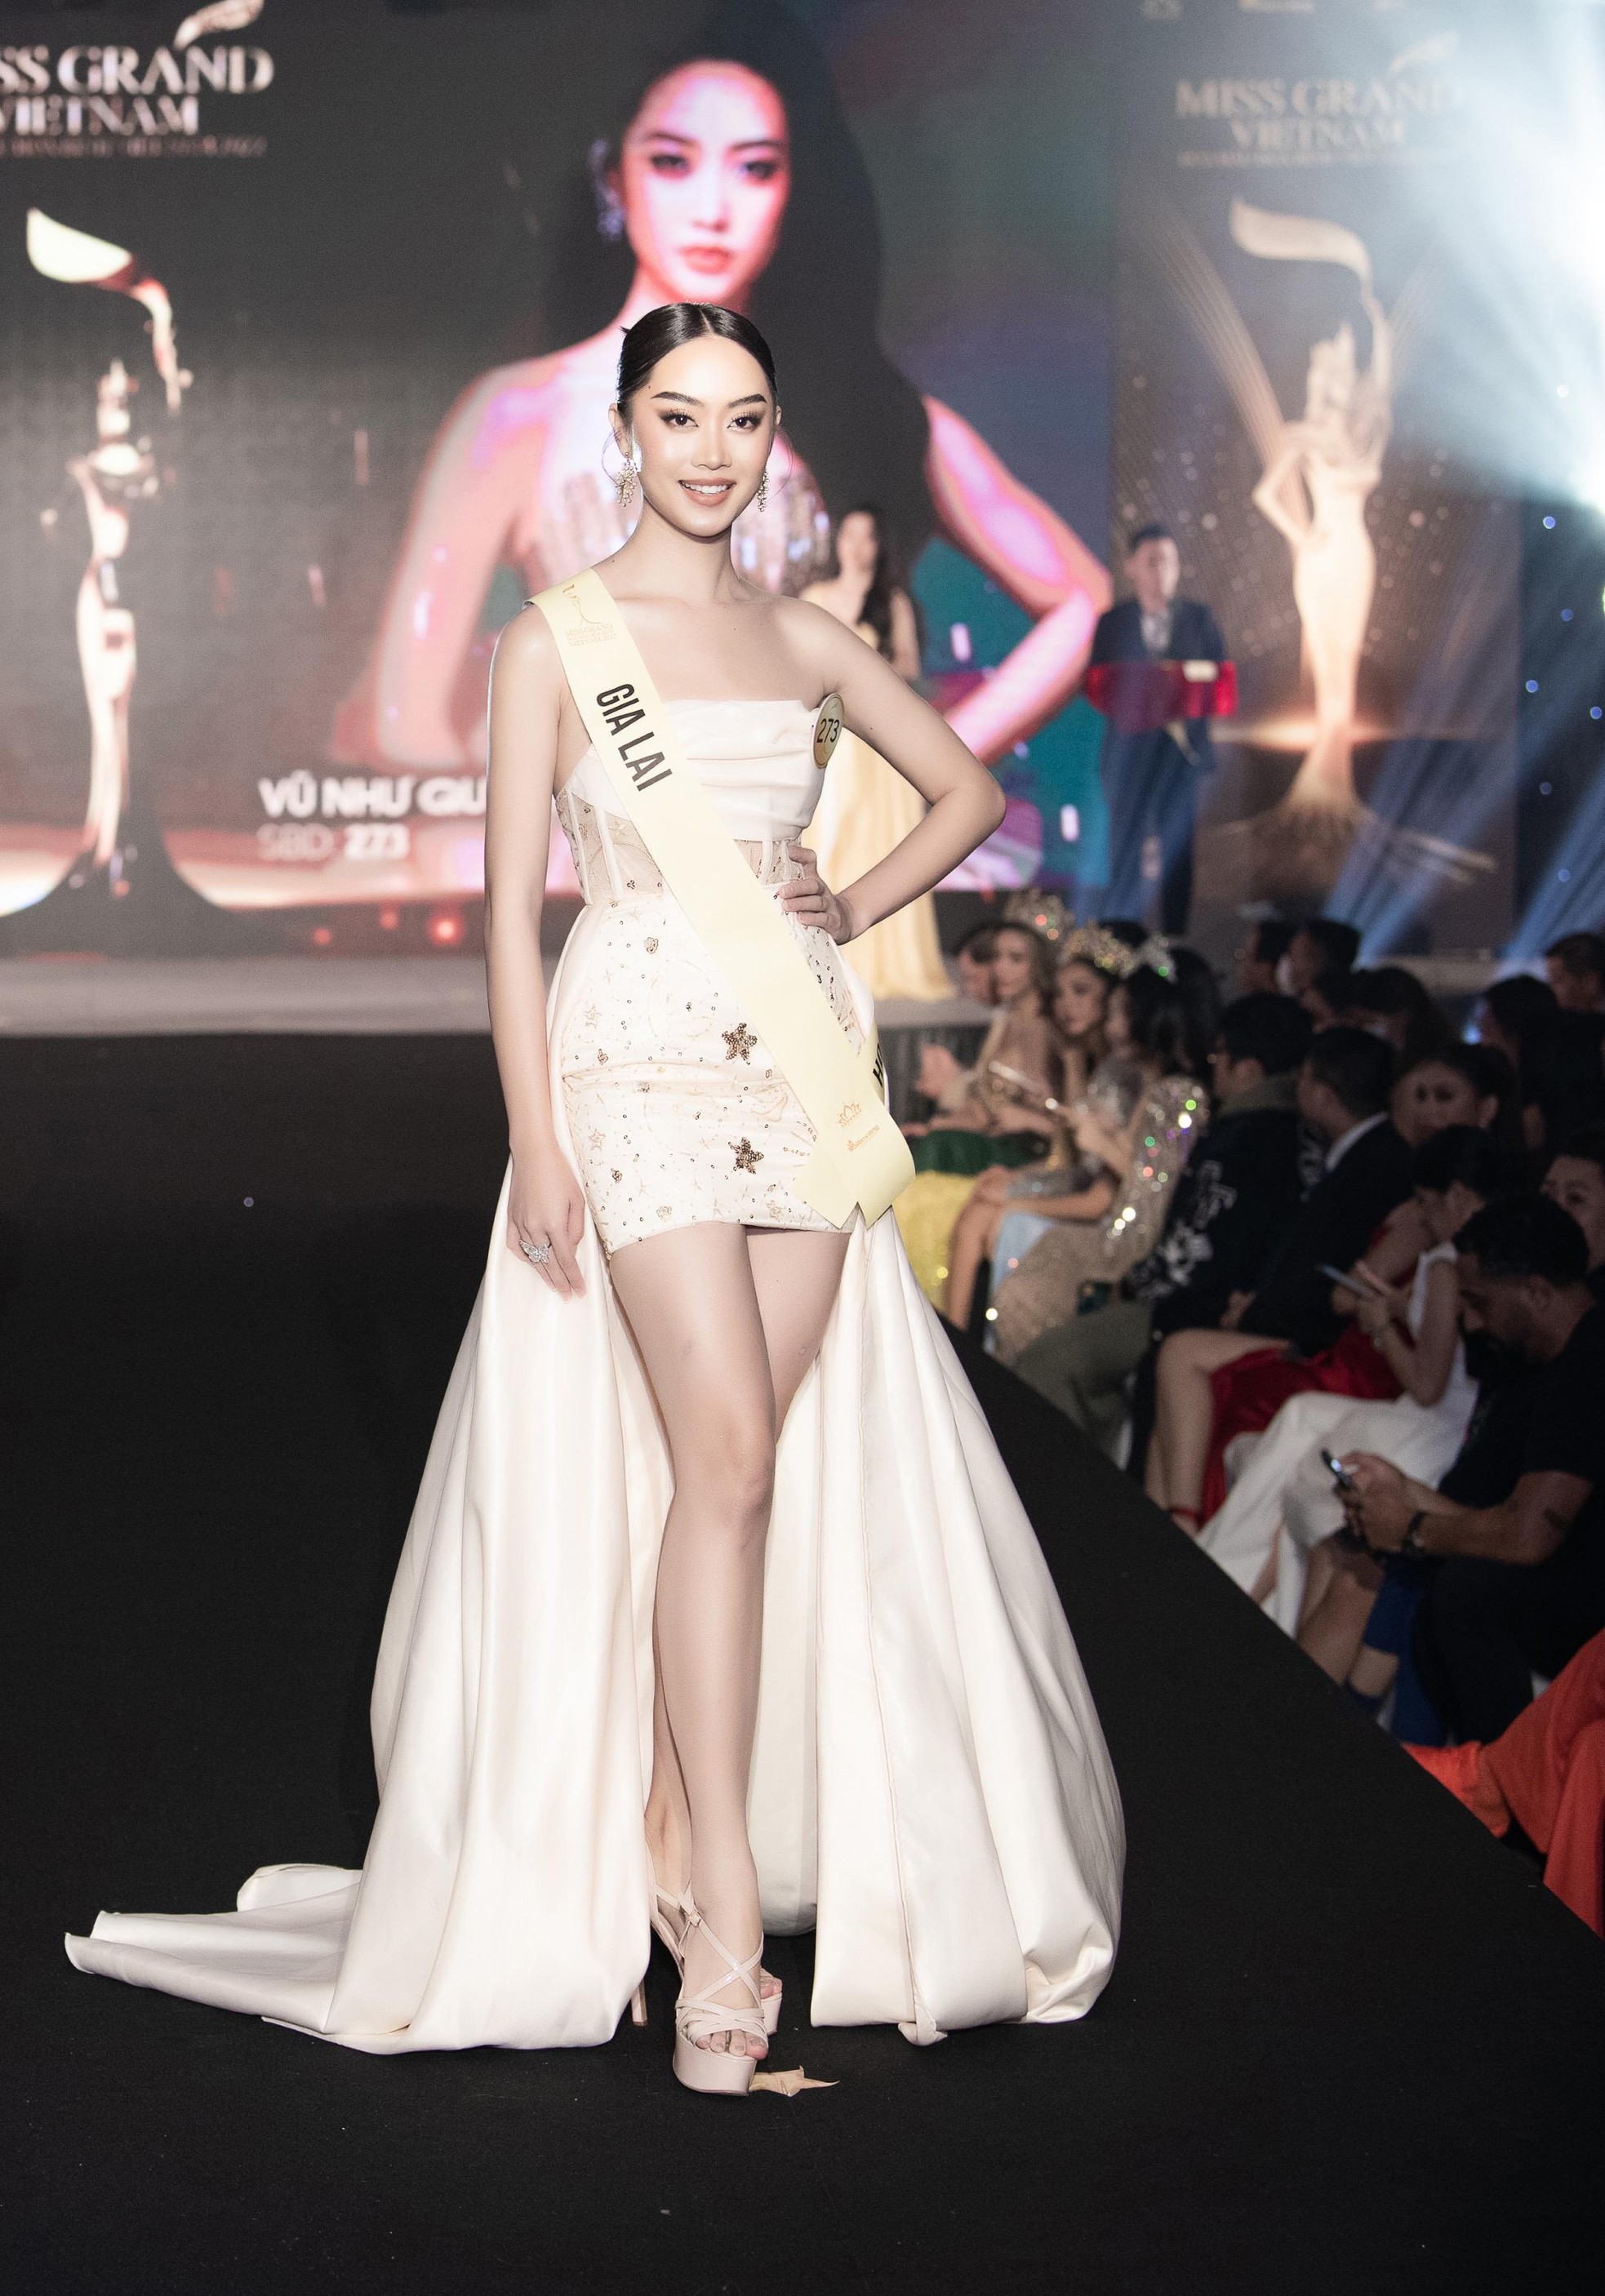 Mai Ngô, Quỳnh Châu tung chiêu catwalk độc đáo tại lễ nhận sash của Miss Grand Vietnam 2022-12